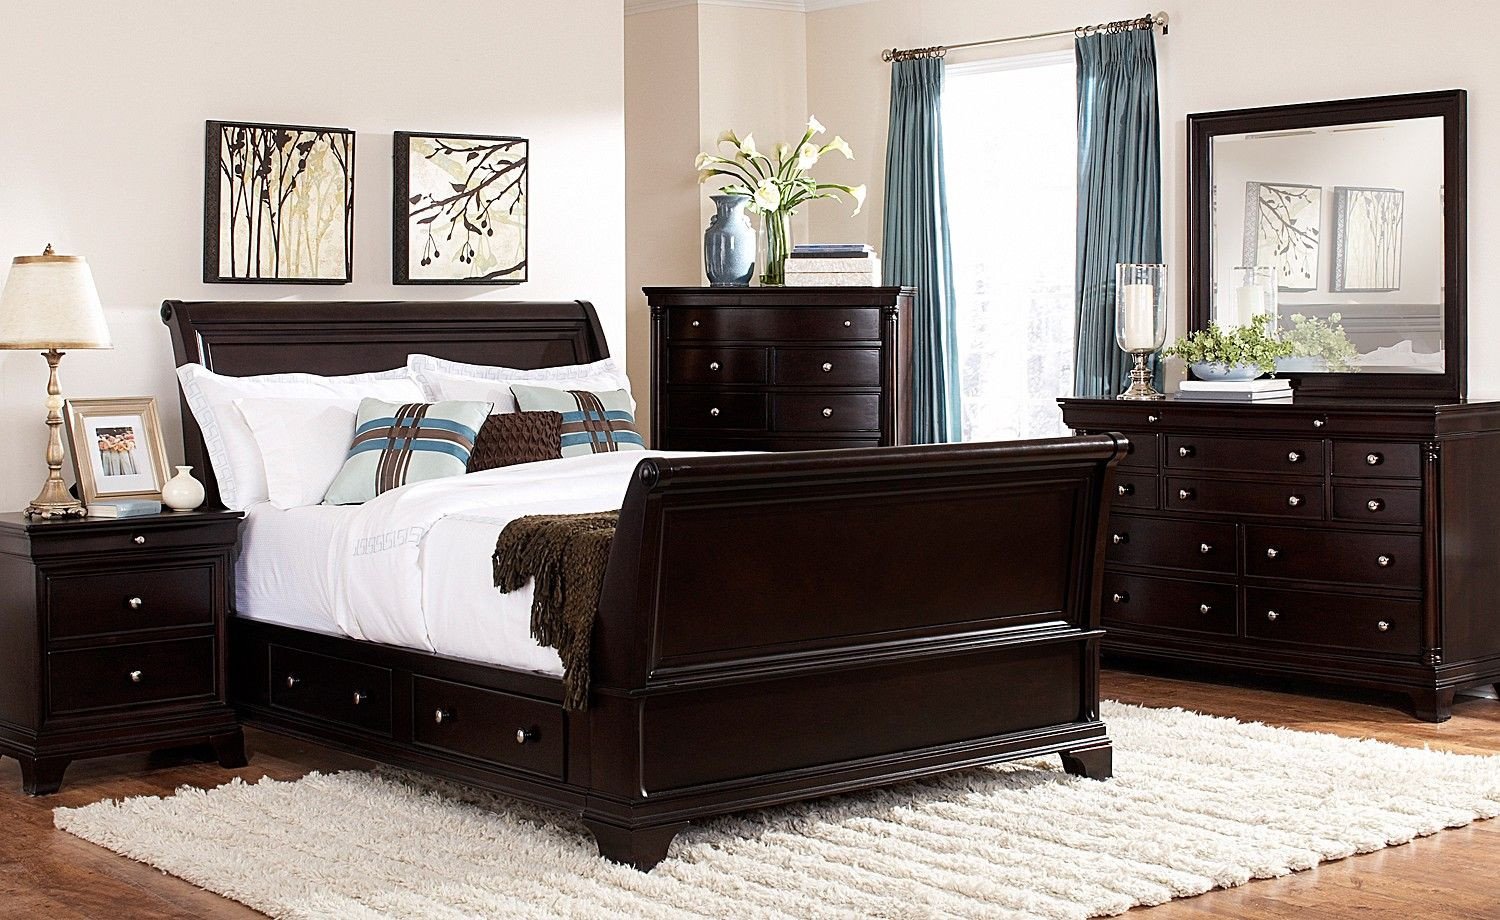 Full Size Bedroom Set Luxury Lakeshore Bedroom 7 Pc Queen Storage Bedroom Furniture